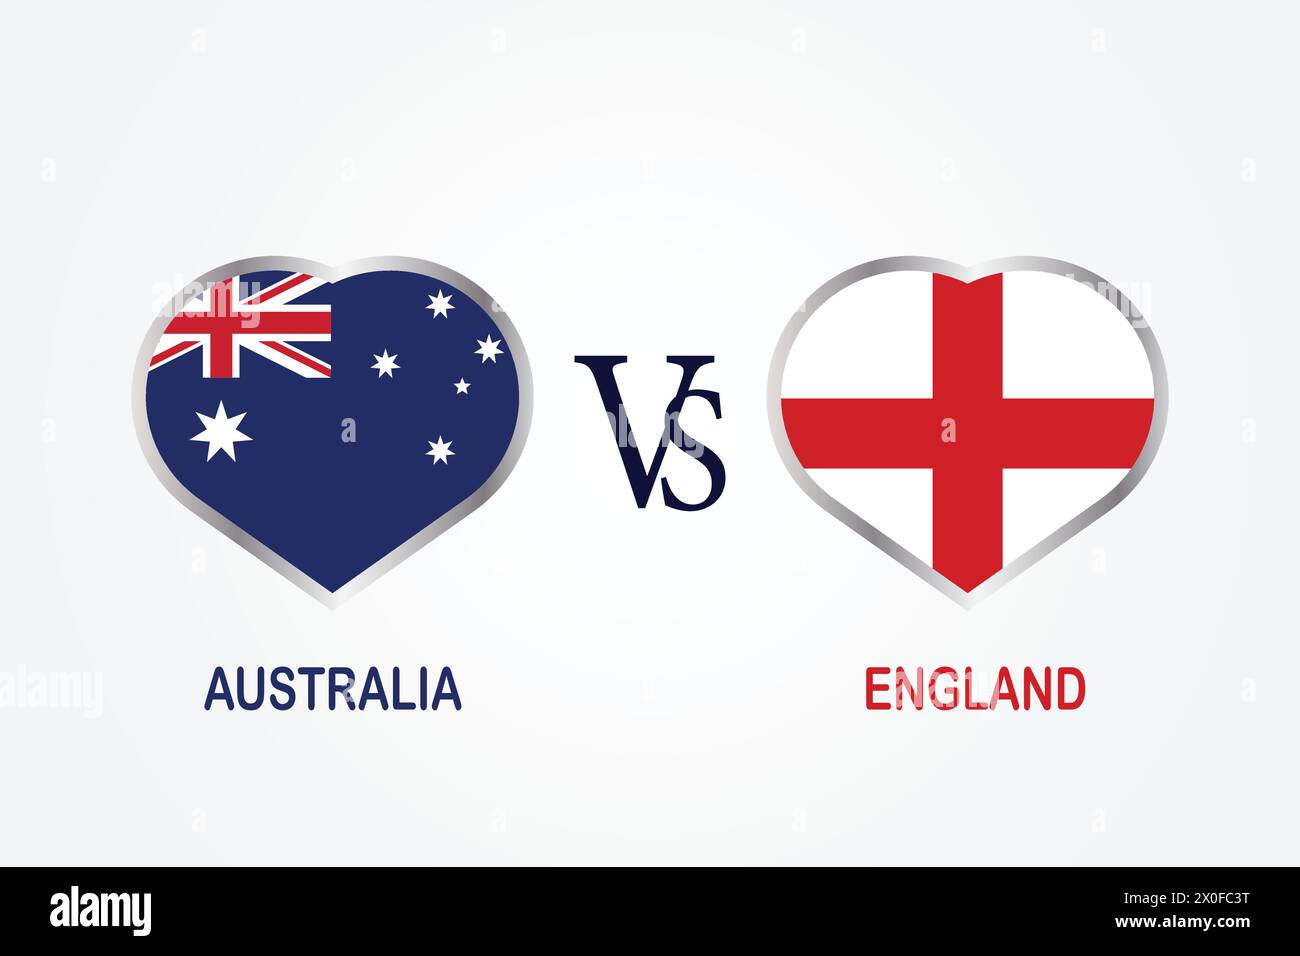 Australie vs Angleterre, concept de match de cricket avec illustration créative du drapeau des pays participants Batsman et Hearts isolés sur fond blanc Illustration de Vecteur